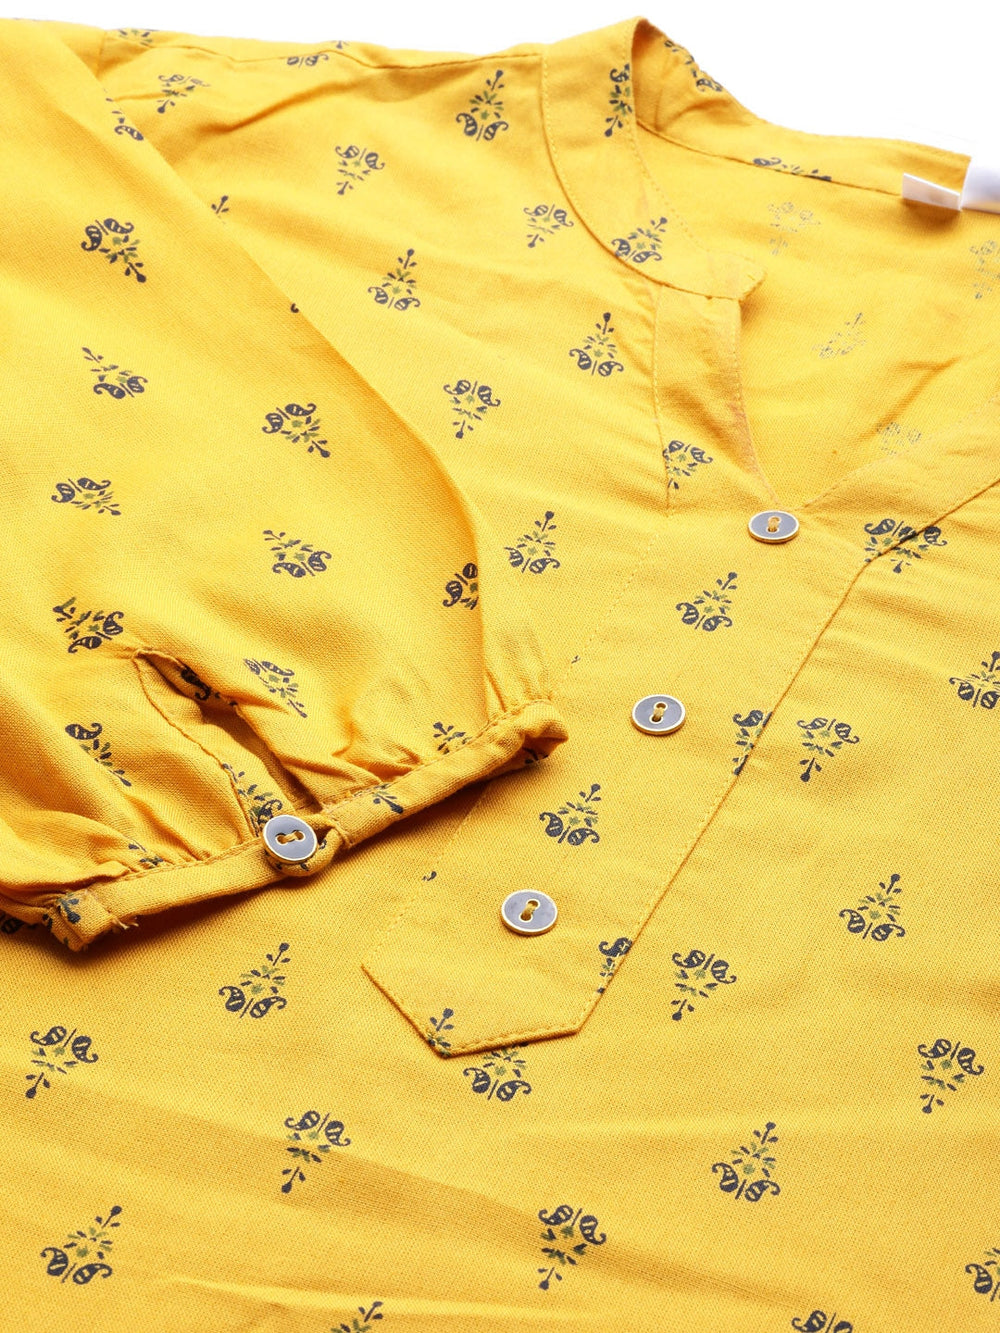 Mustard Yellow & Navy Blue Printed Tunic-Yufta Store-7551TOPMSXS